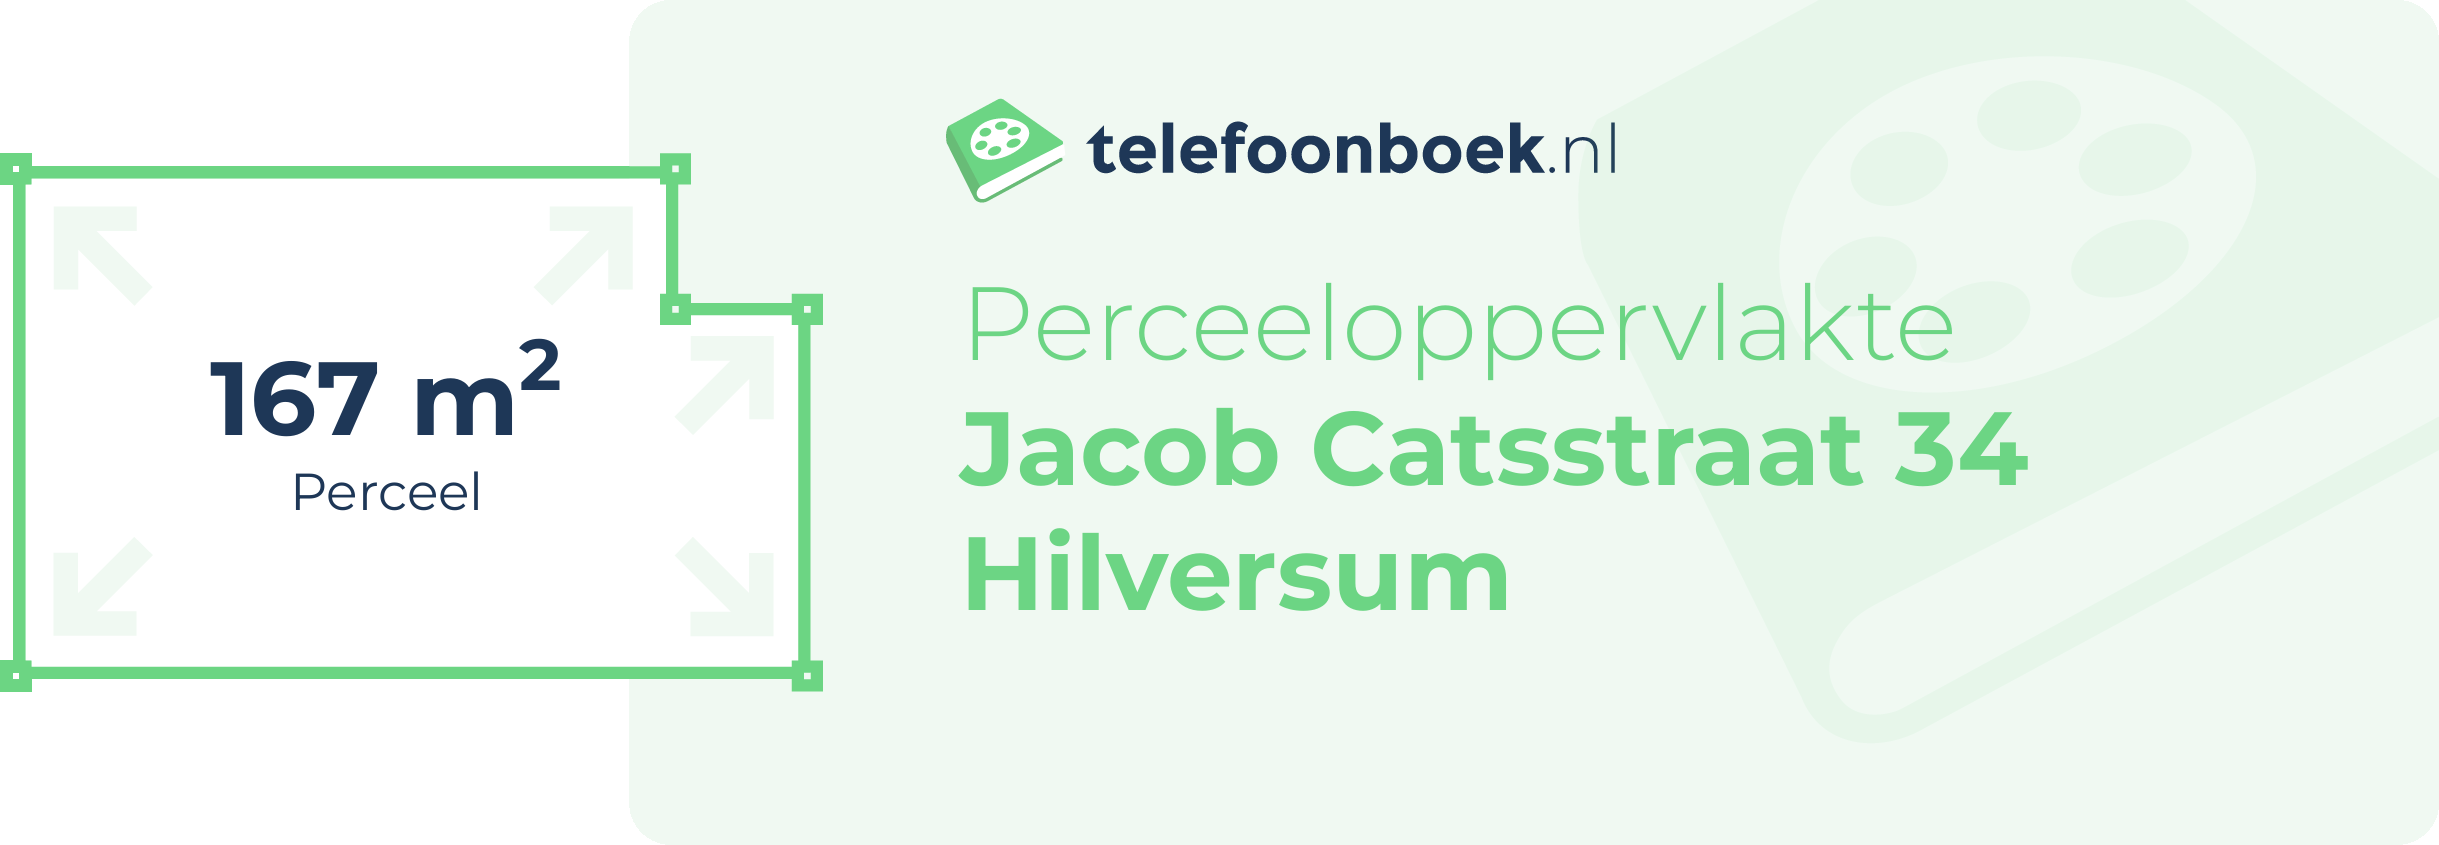 Perceeloppervlakte Jacob Catsstraat 34 Hilversum